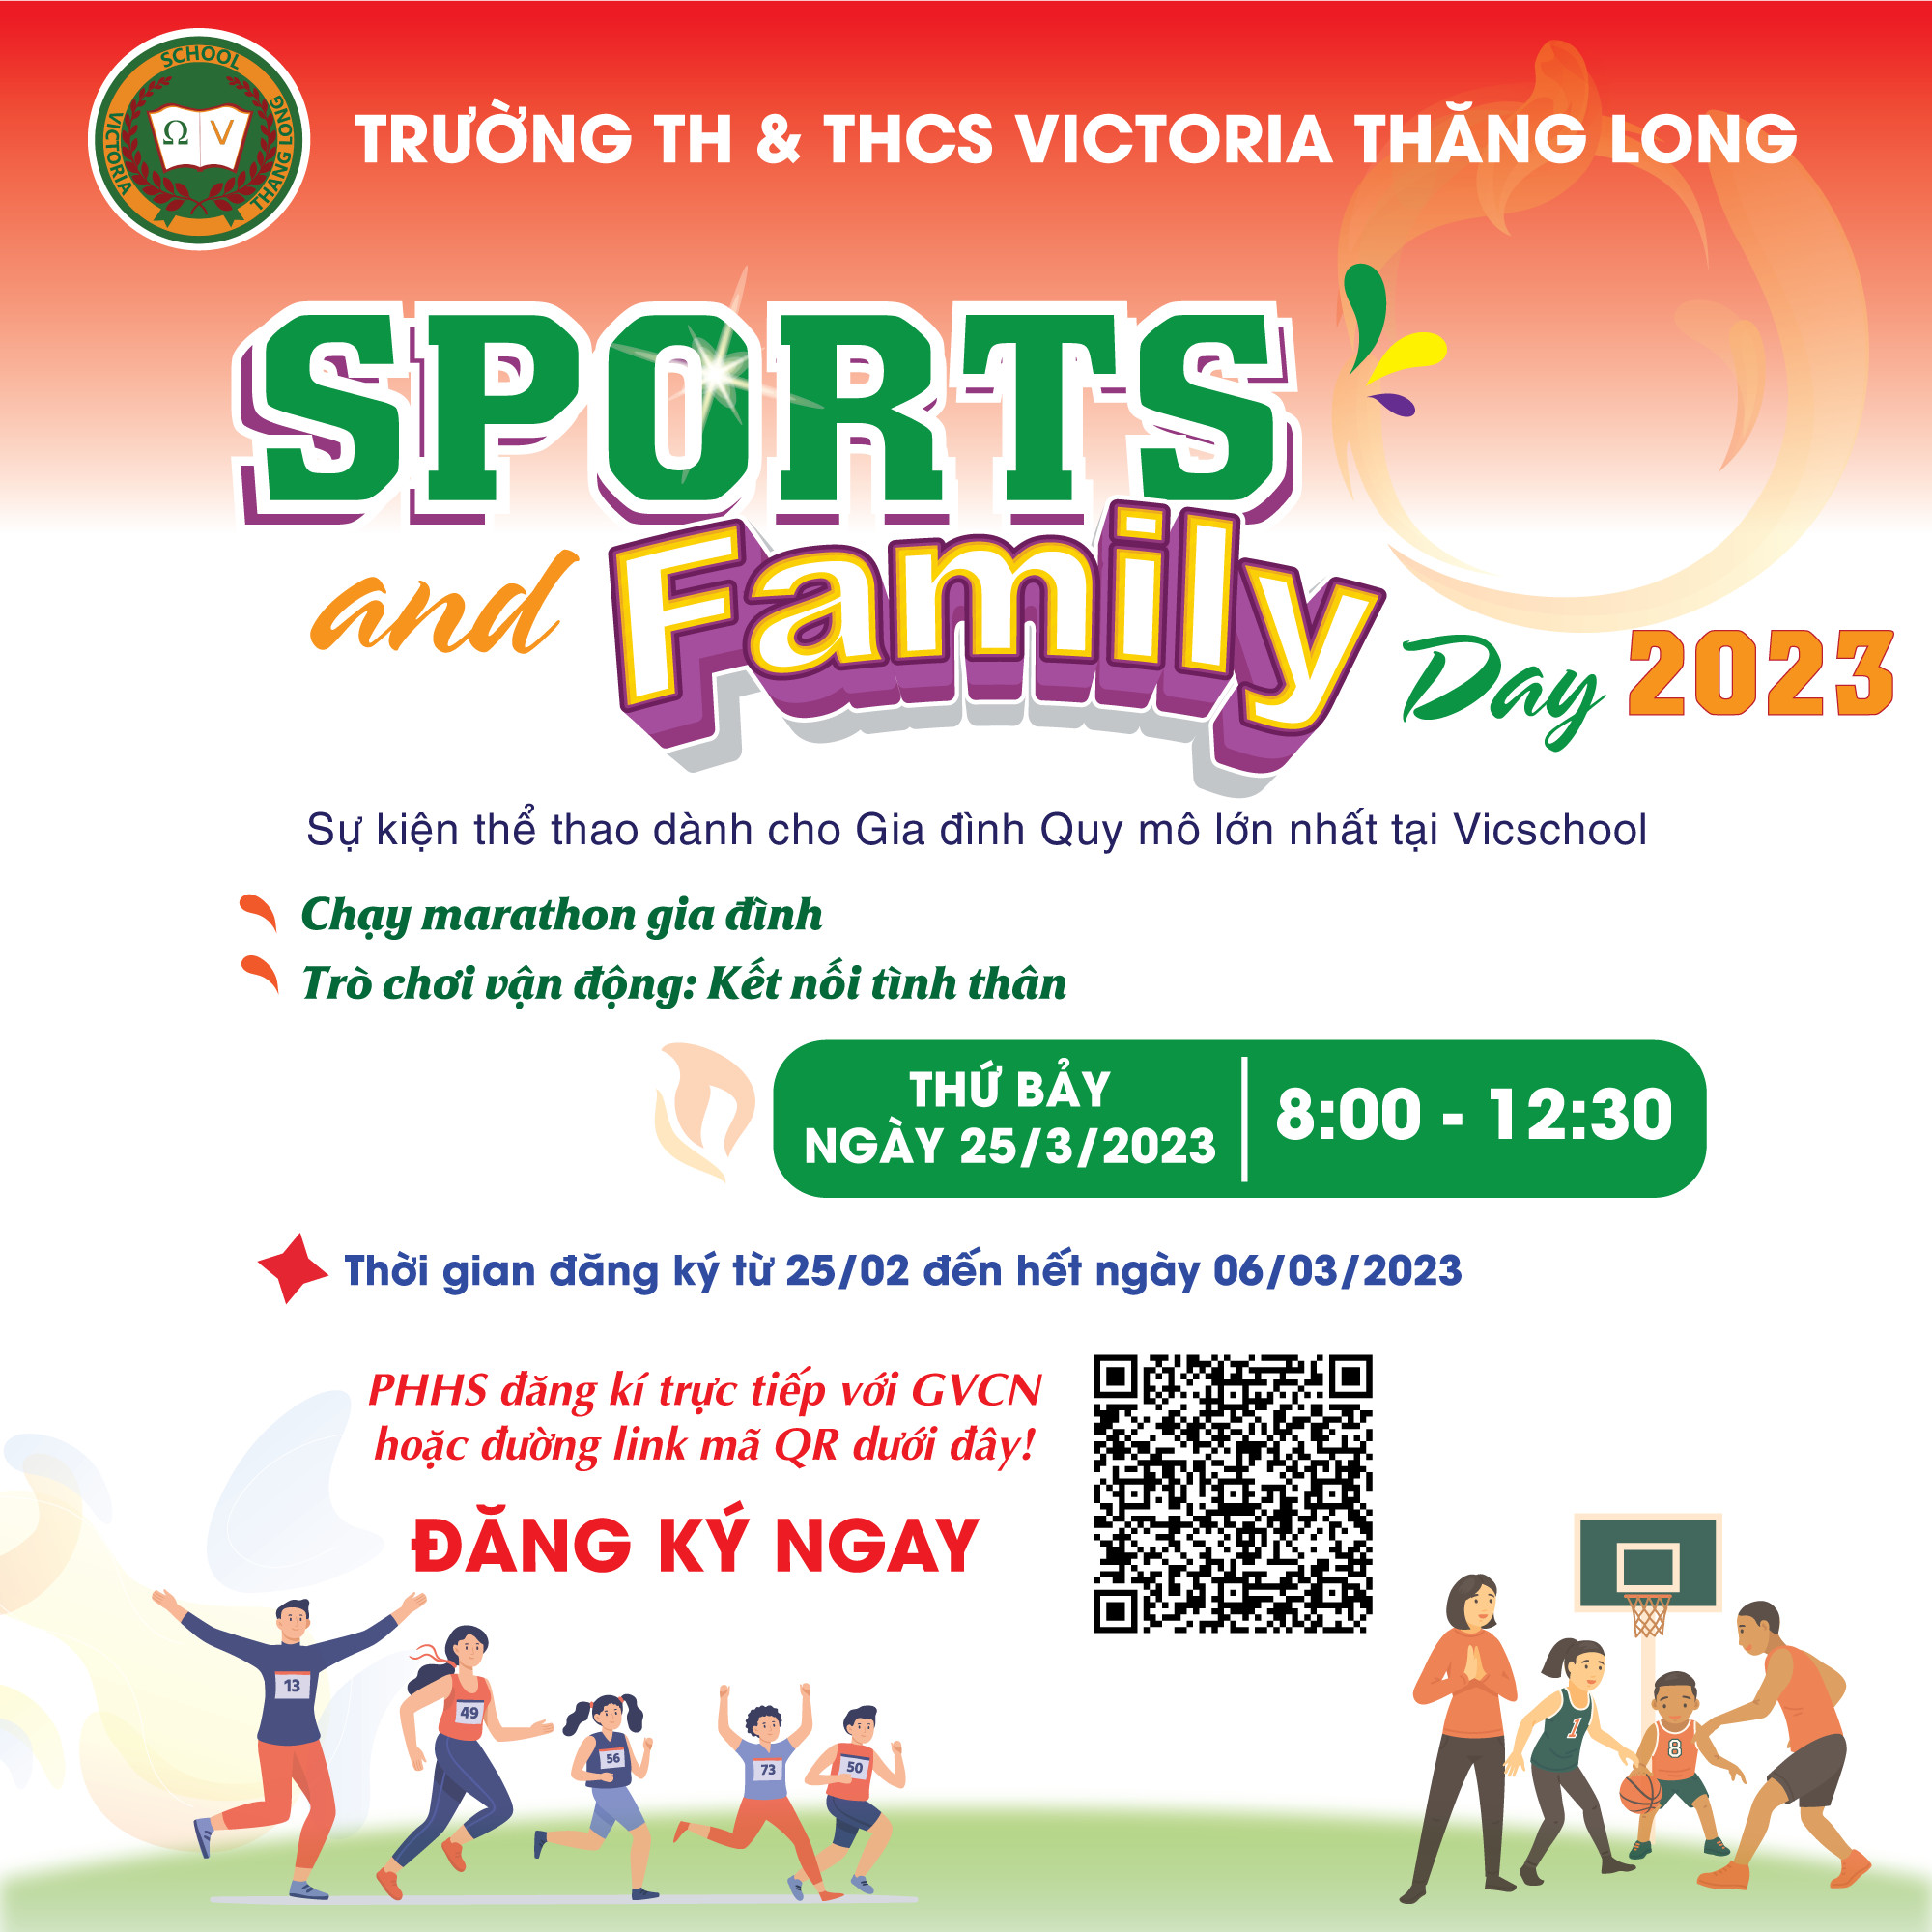 SPORTS AND FAMILY DAY 2023 – Sự kiện thể thao dành cho Gia đình quy mô lớn nhất tại Vicschool